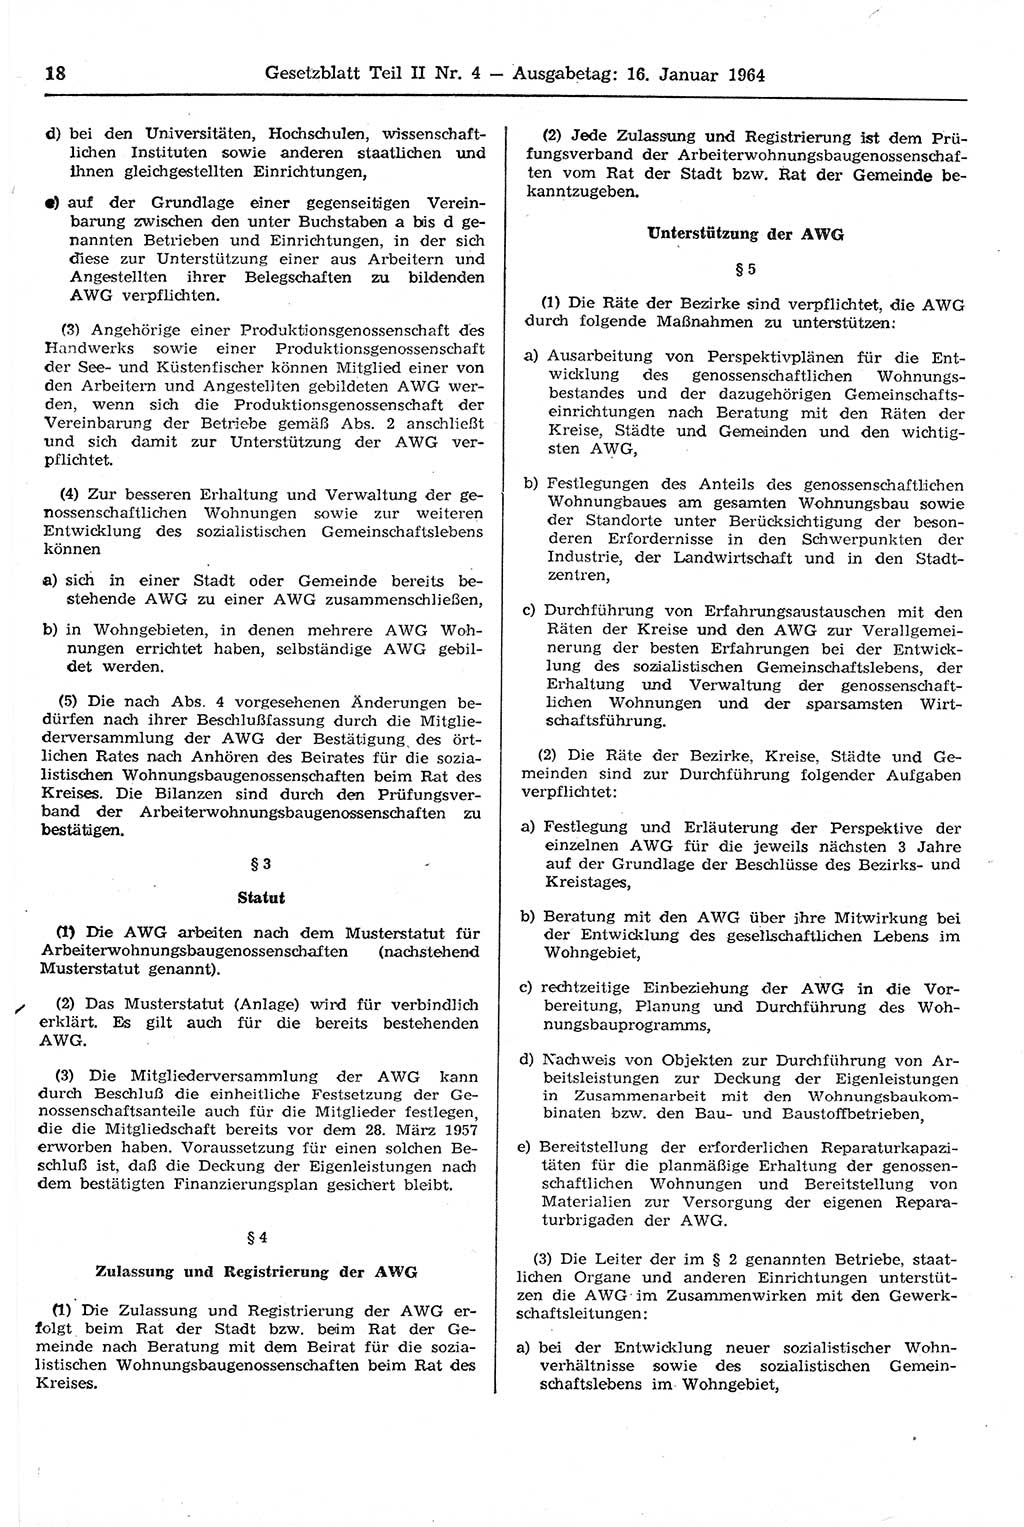 Gesetzblatt (GBl.) der Deutschen Demokratischen Republik (DDR) Teil ⅠⅠ 1964, Seite 18 (GBl. DDR ⅠⅠ 1964, S. 18)